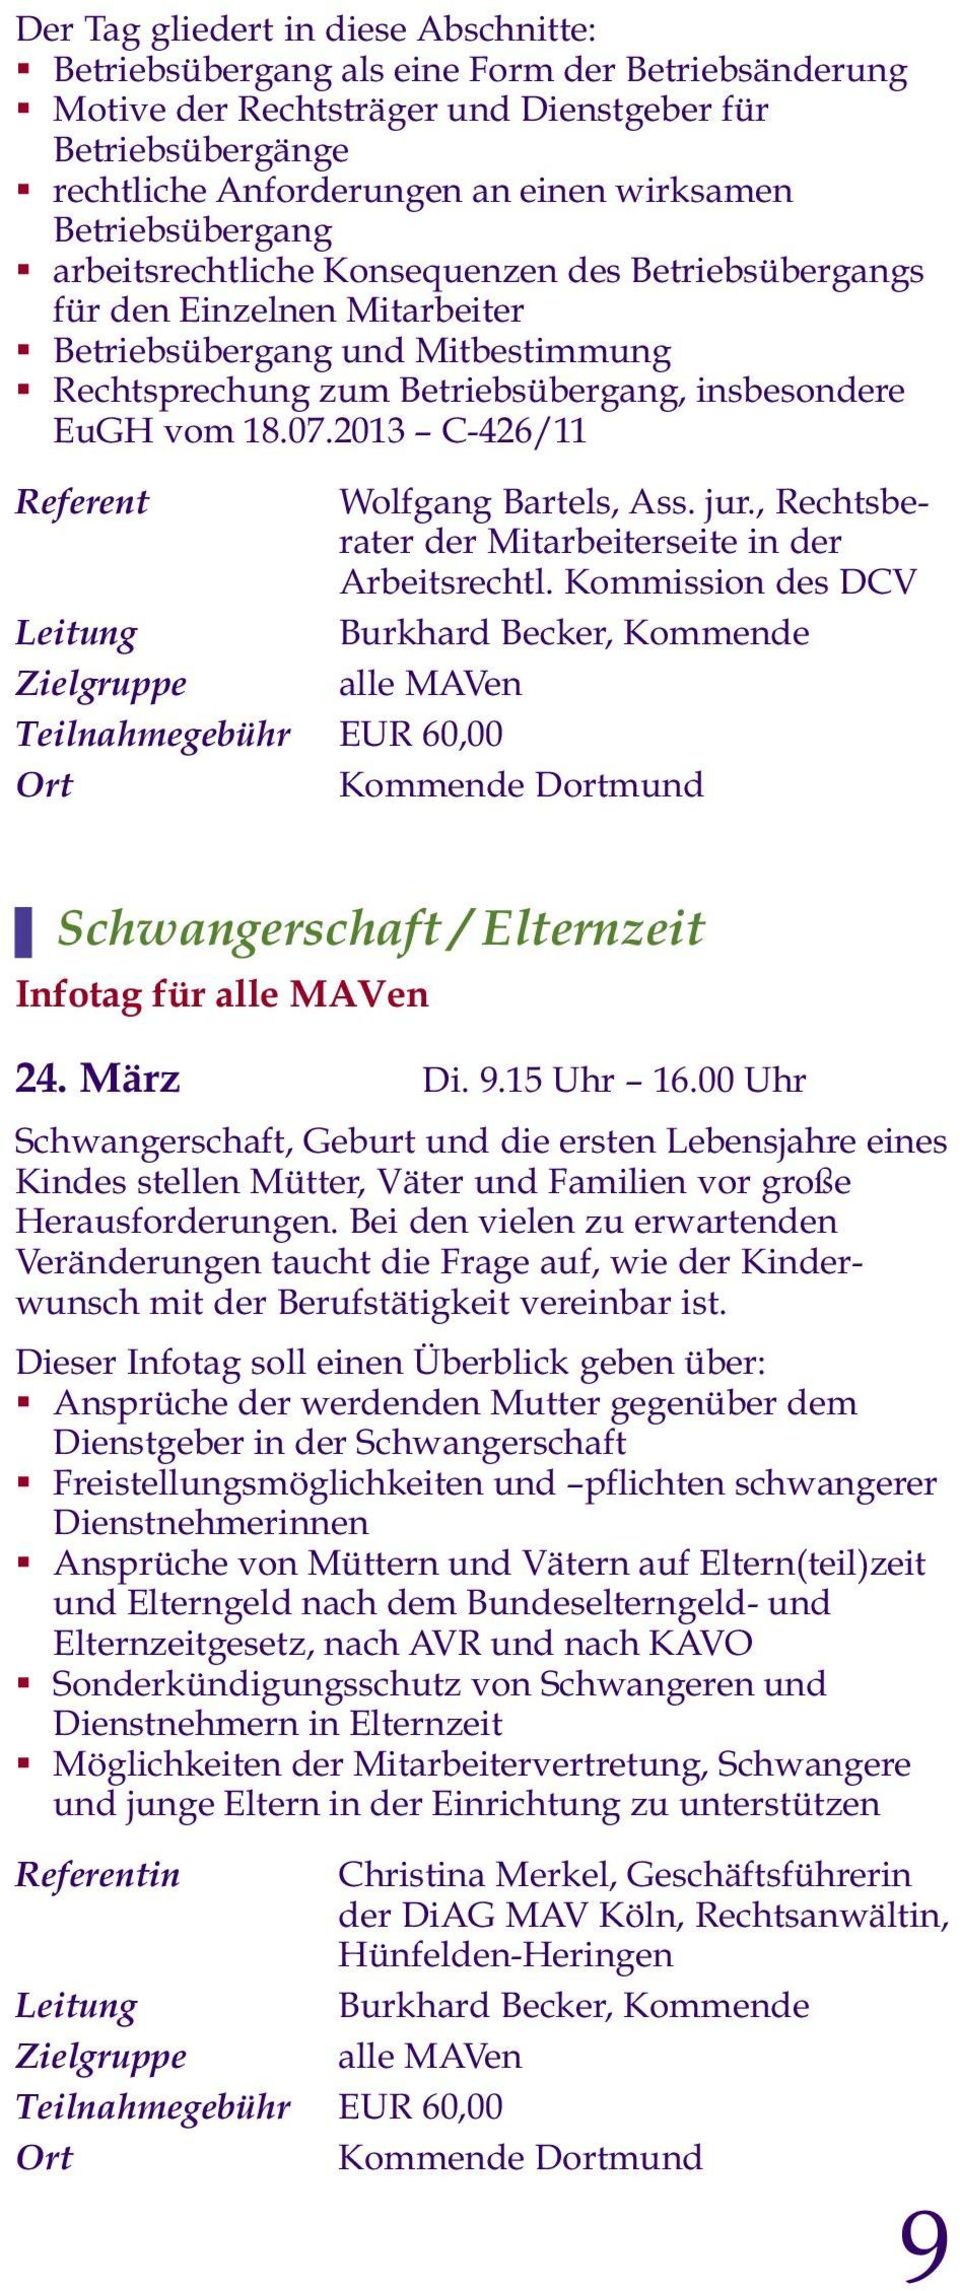 insbesondere EuGH vom 18.07.2013 C-426/11 Referent Wolfgang Bartels, Ass. jur., Rechtsbe - rater der Mitarbeiterseite in der Arbeitsrechtl.